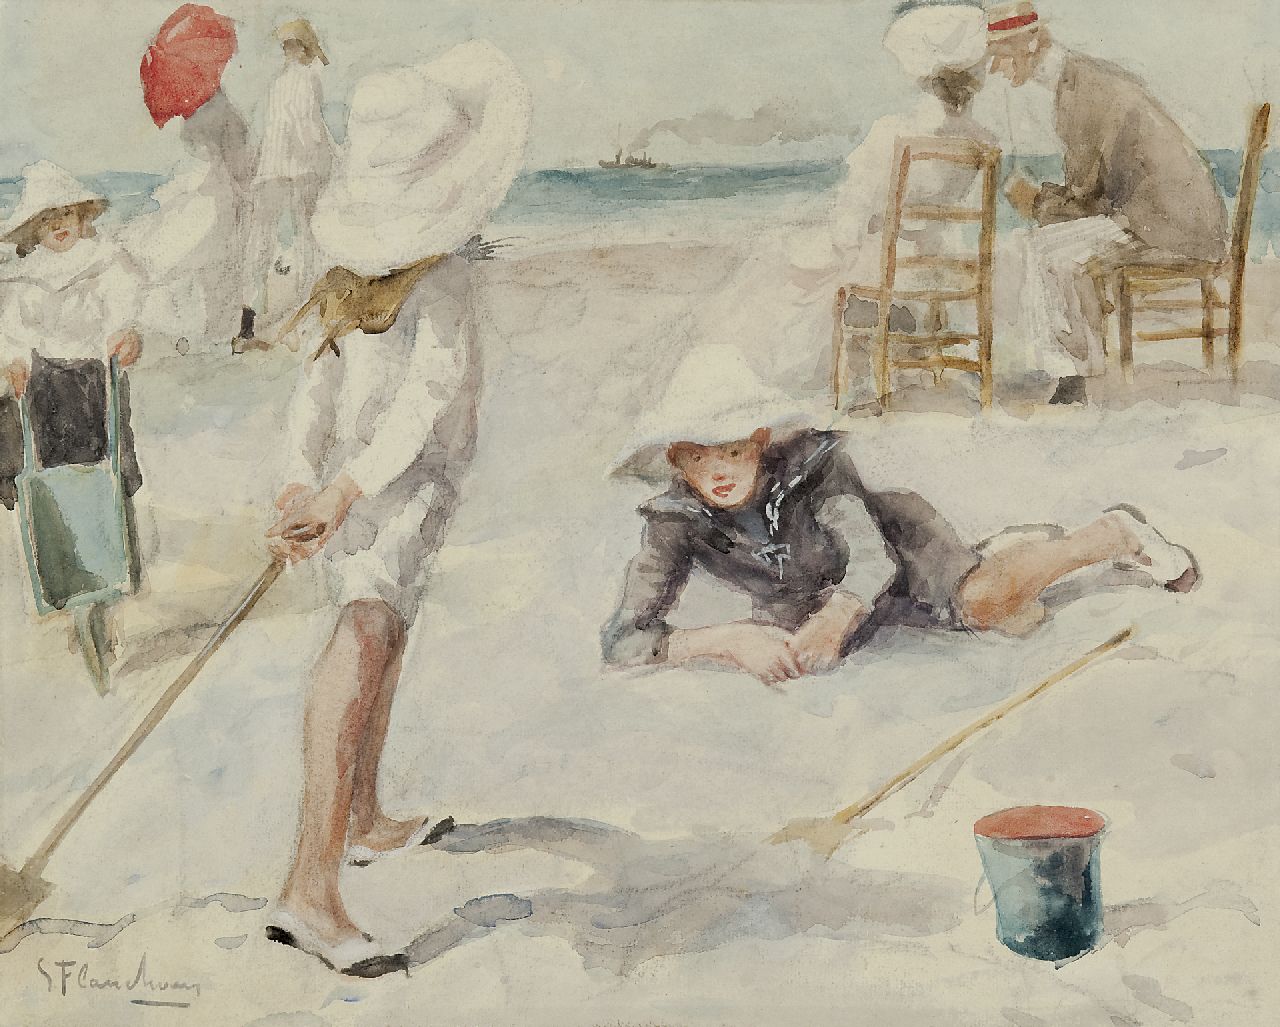 Flasschoen G.  | Gustave Flasschoen, Op het strand, aquarel op papier 35,1 x 43,4 cm, gesigneerd linksonder